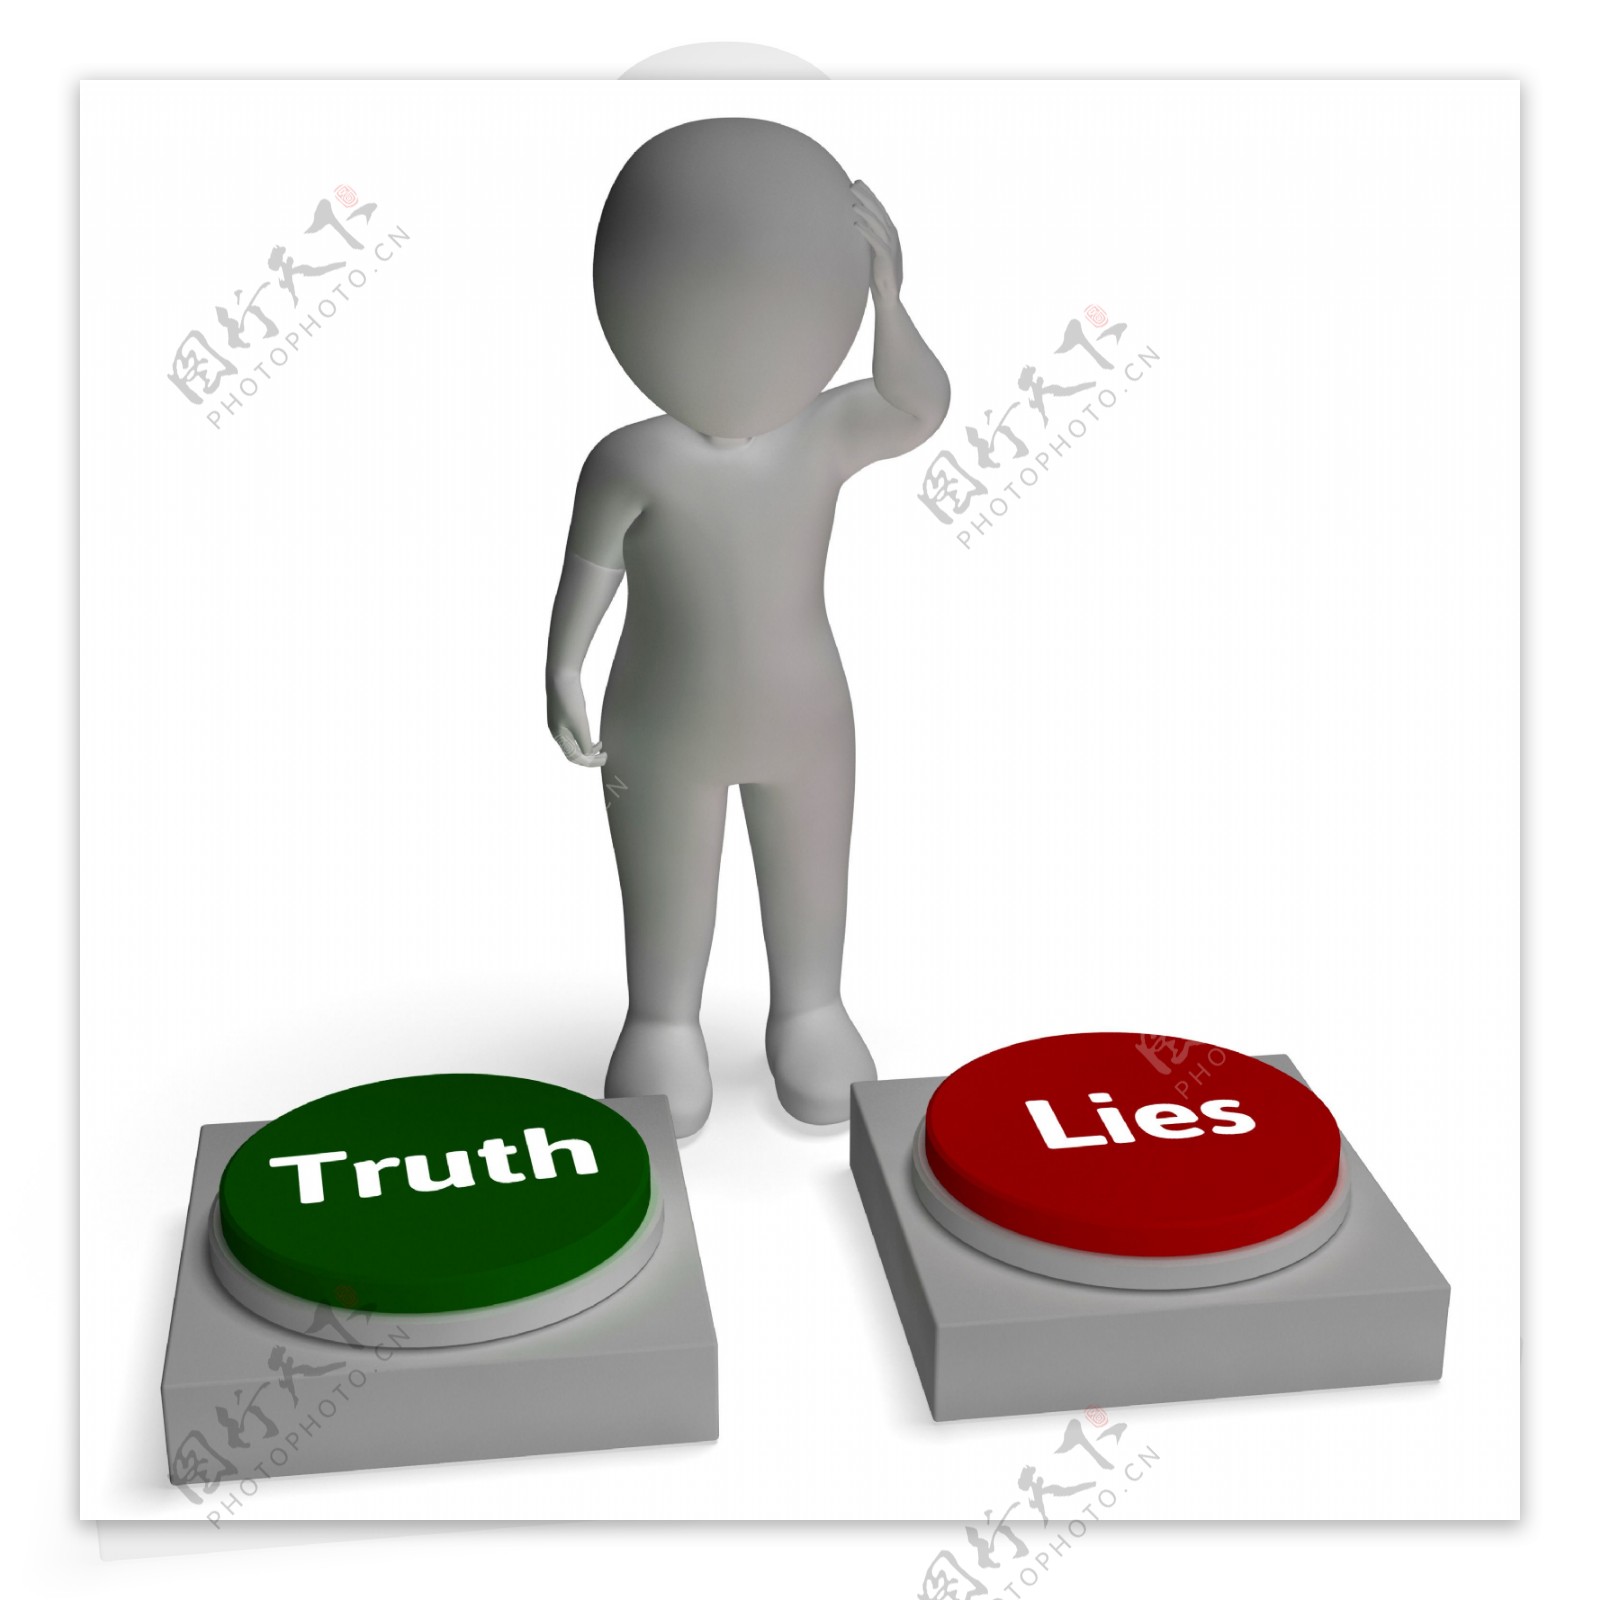 真相按钮显示诚实或不诚实